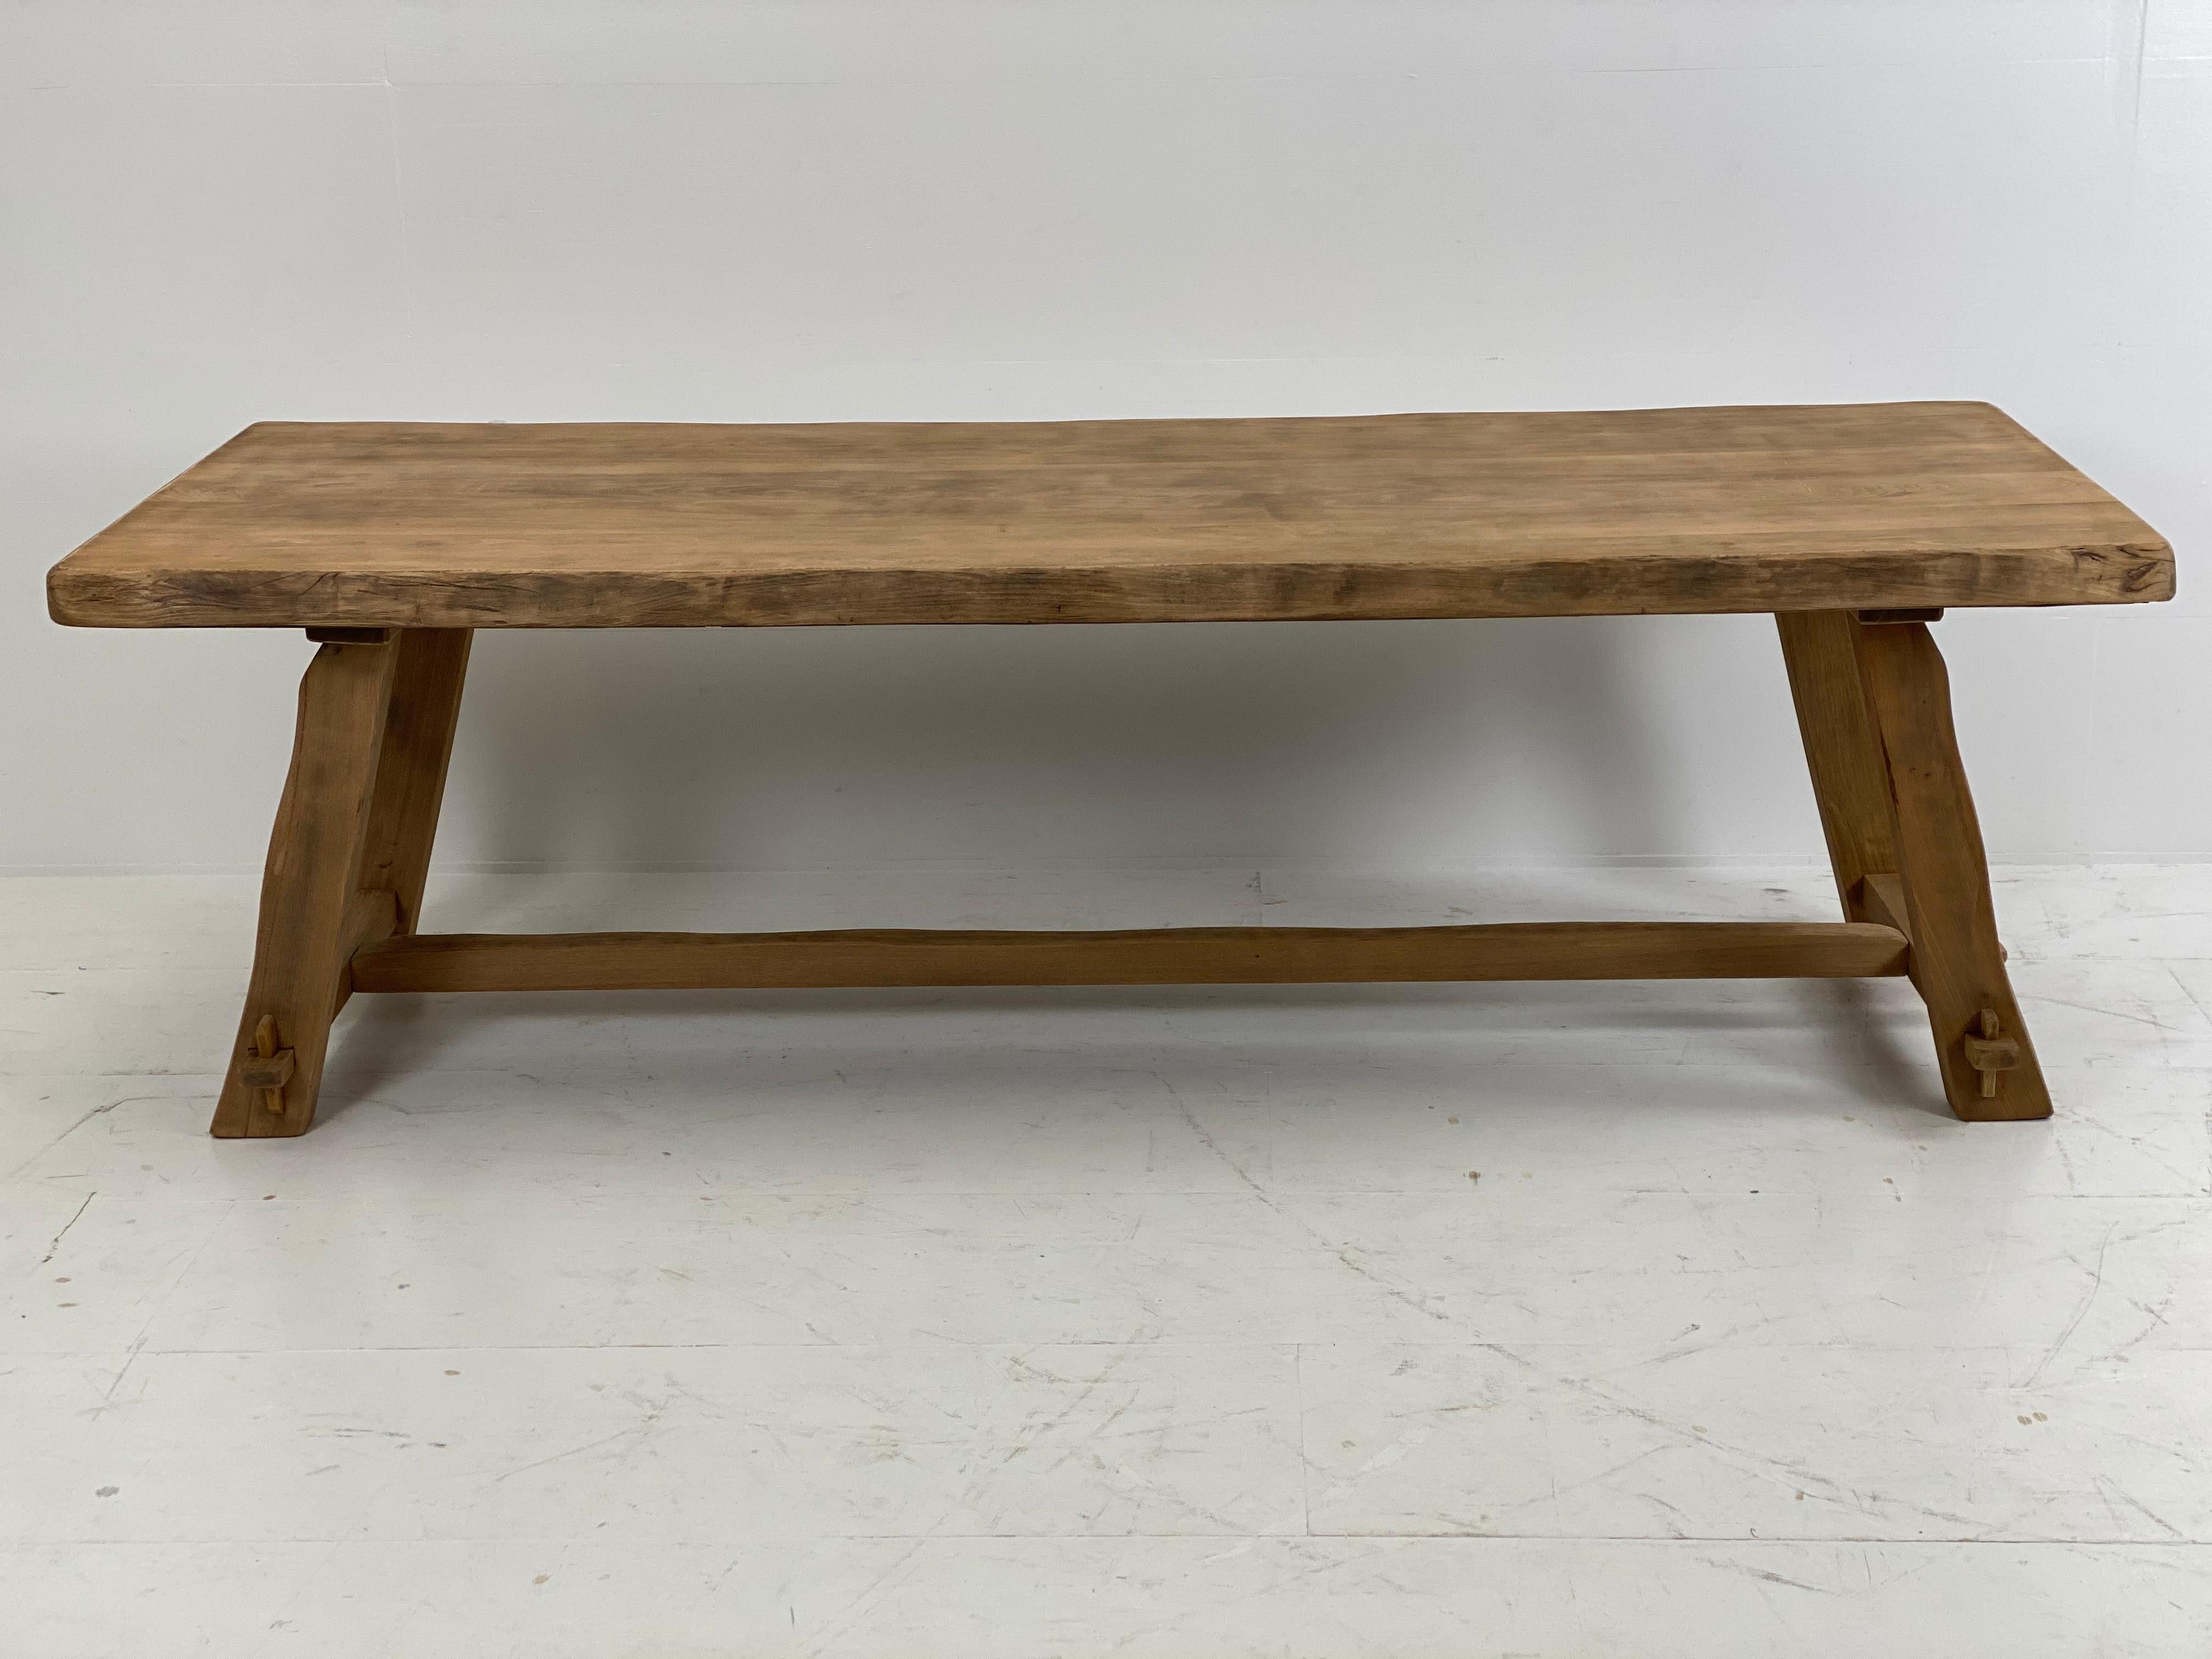 Massiver Tisch aus Ulmenholz von Olavi Hanninen, für Miko Nupponen, Finnland
die Oberseite ist 7 cm dick,
schöne gebleichte Patina,
kann in der Küche, als Schreibtisch oder als Konsolentisch verwendet werden.